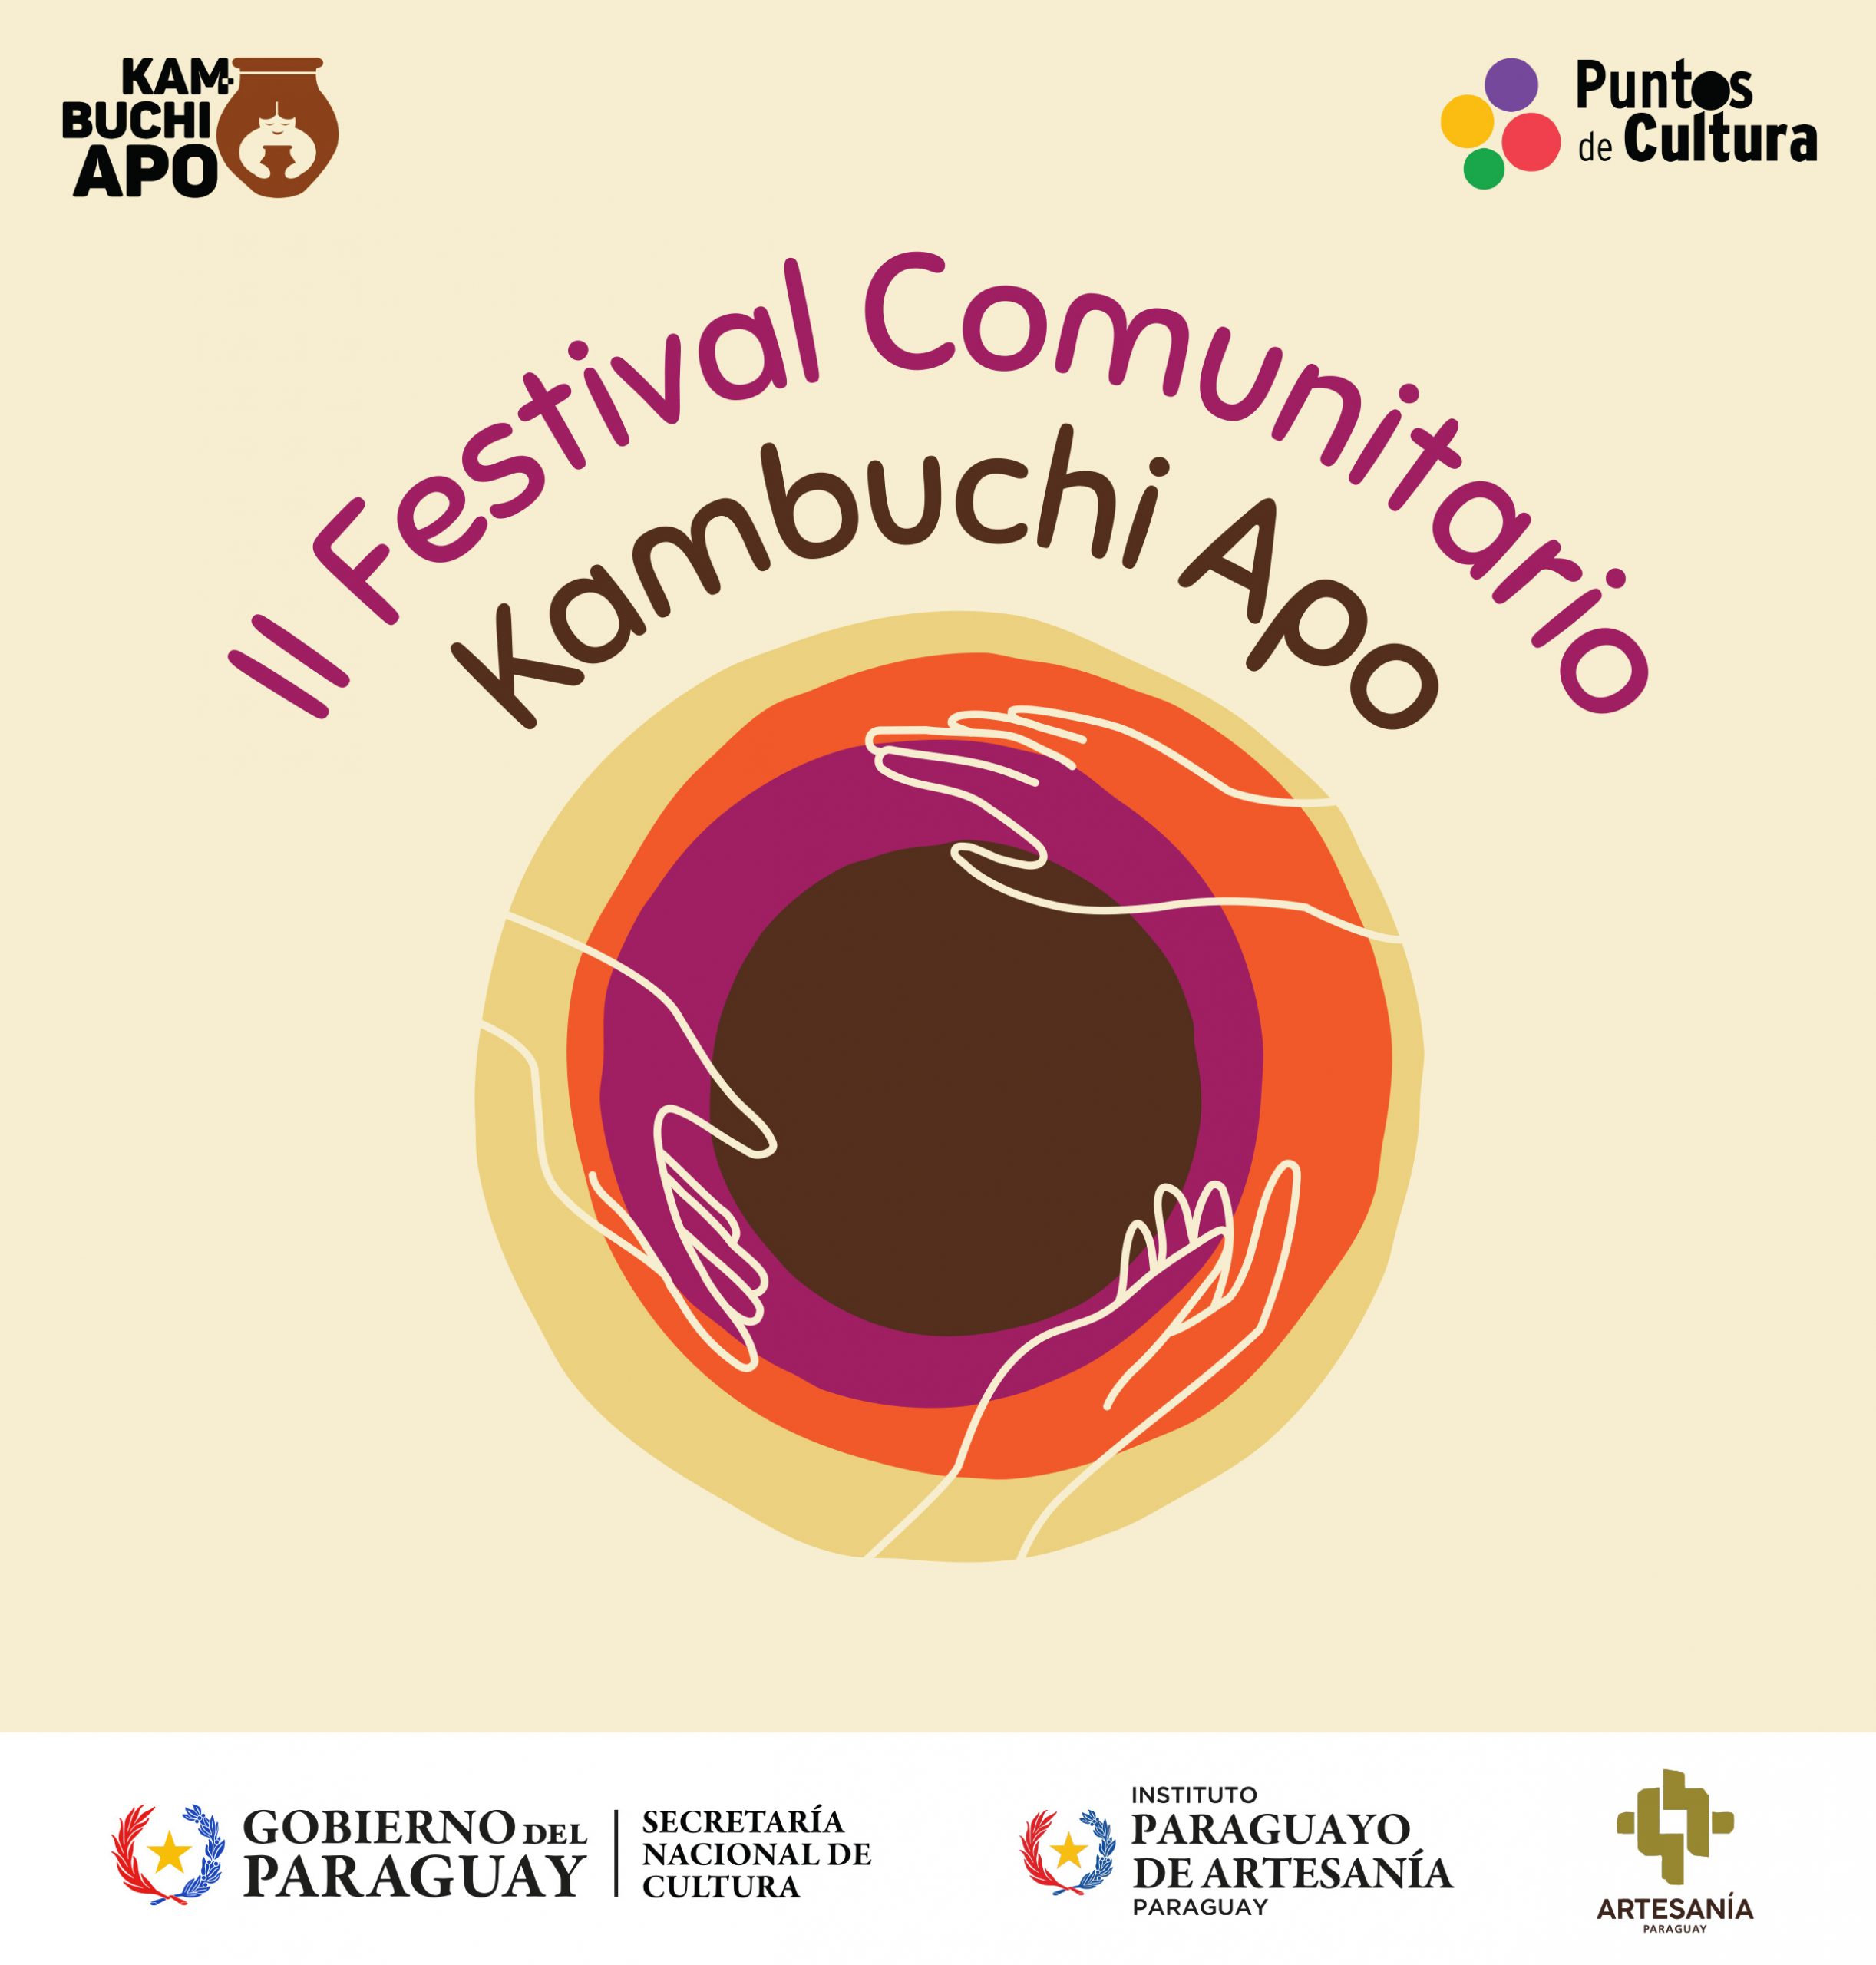 El 23 y 24 de setiembre se realizará el segundo Festival Comunitario Kambuchi Apo – Puntos de Cultura 2023 imagen